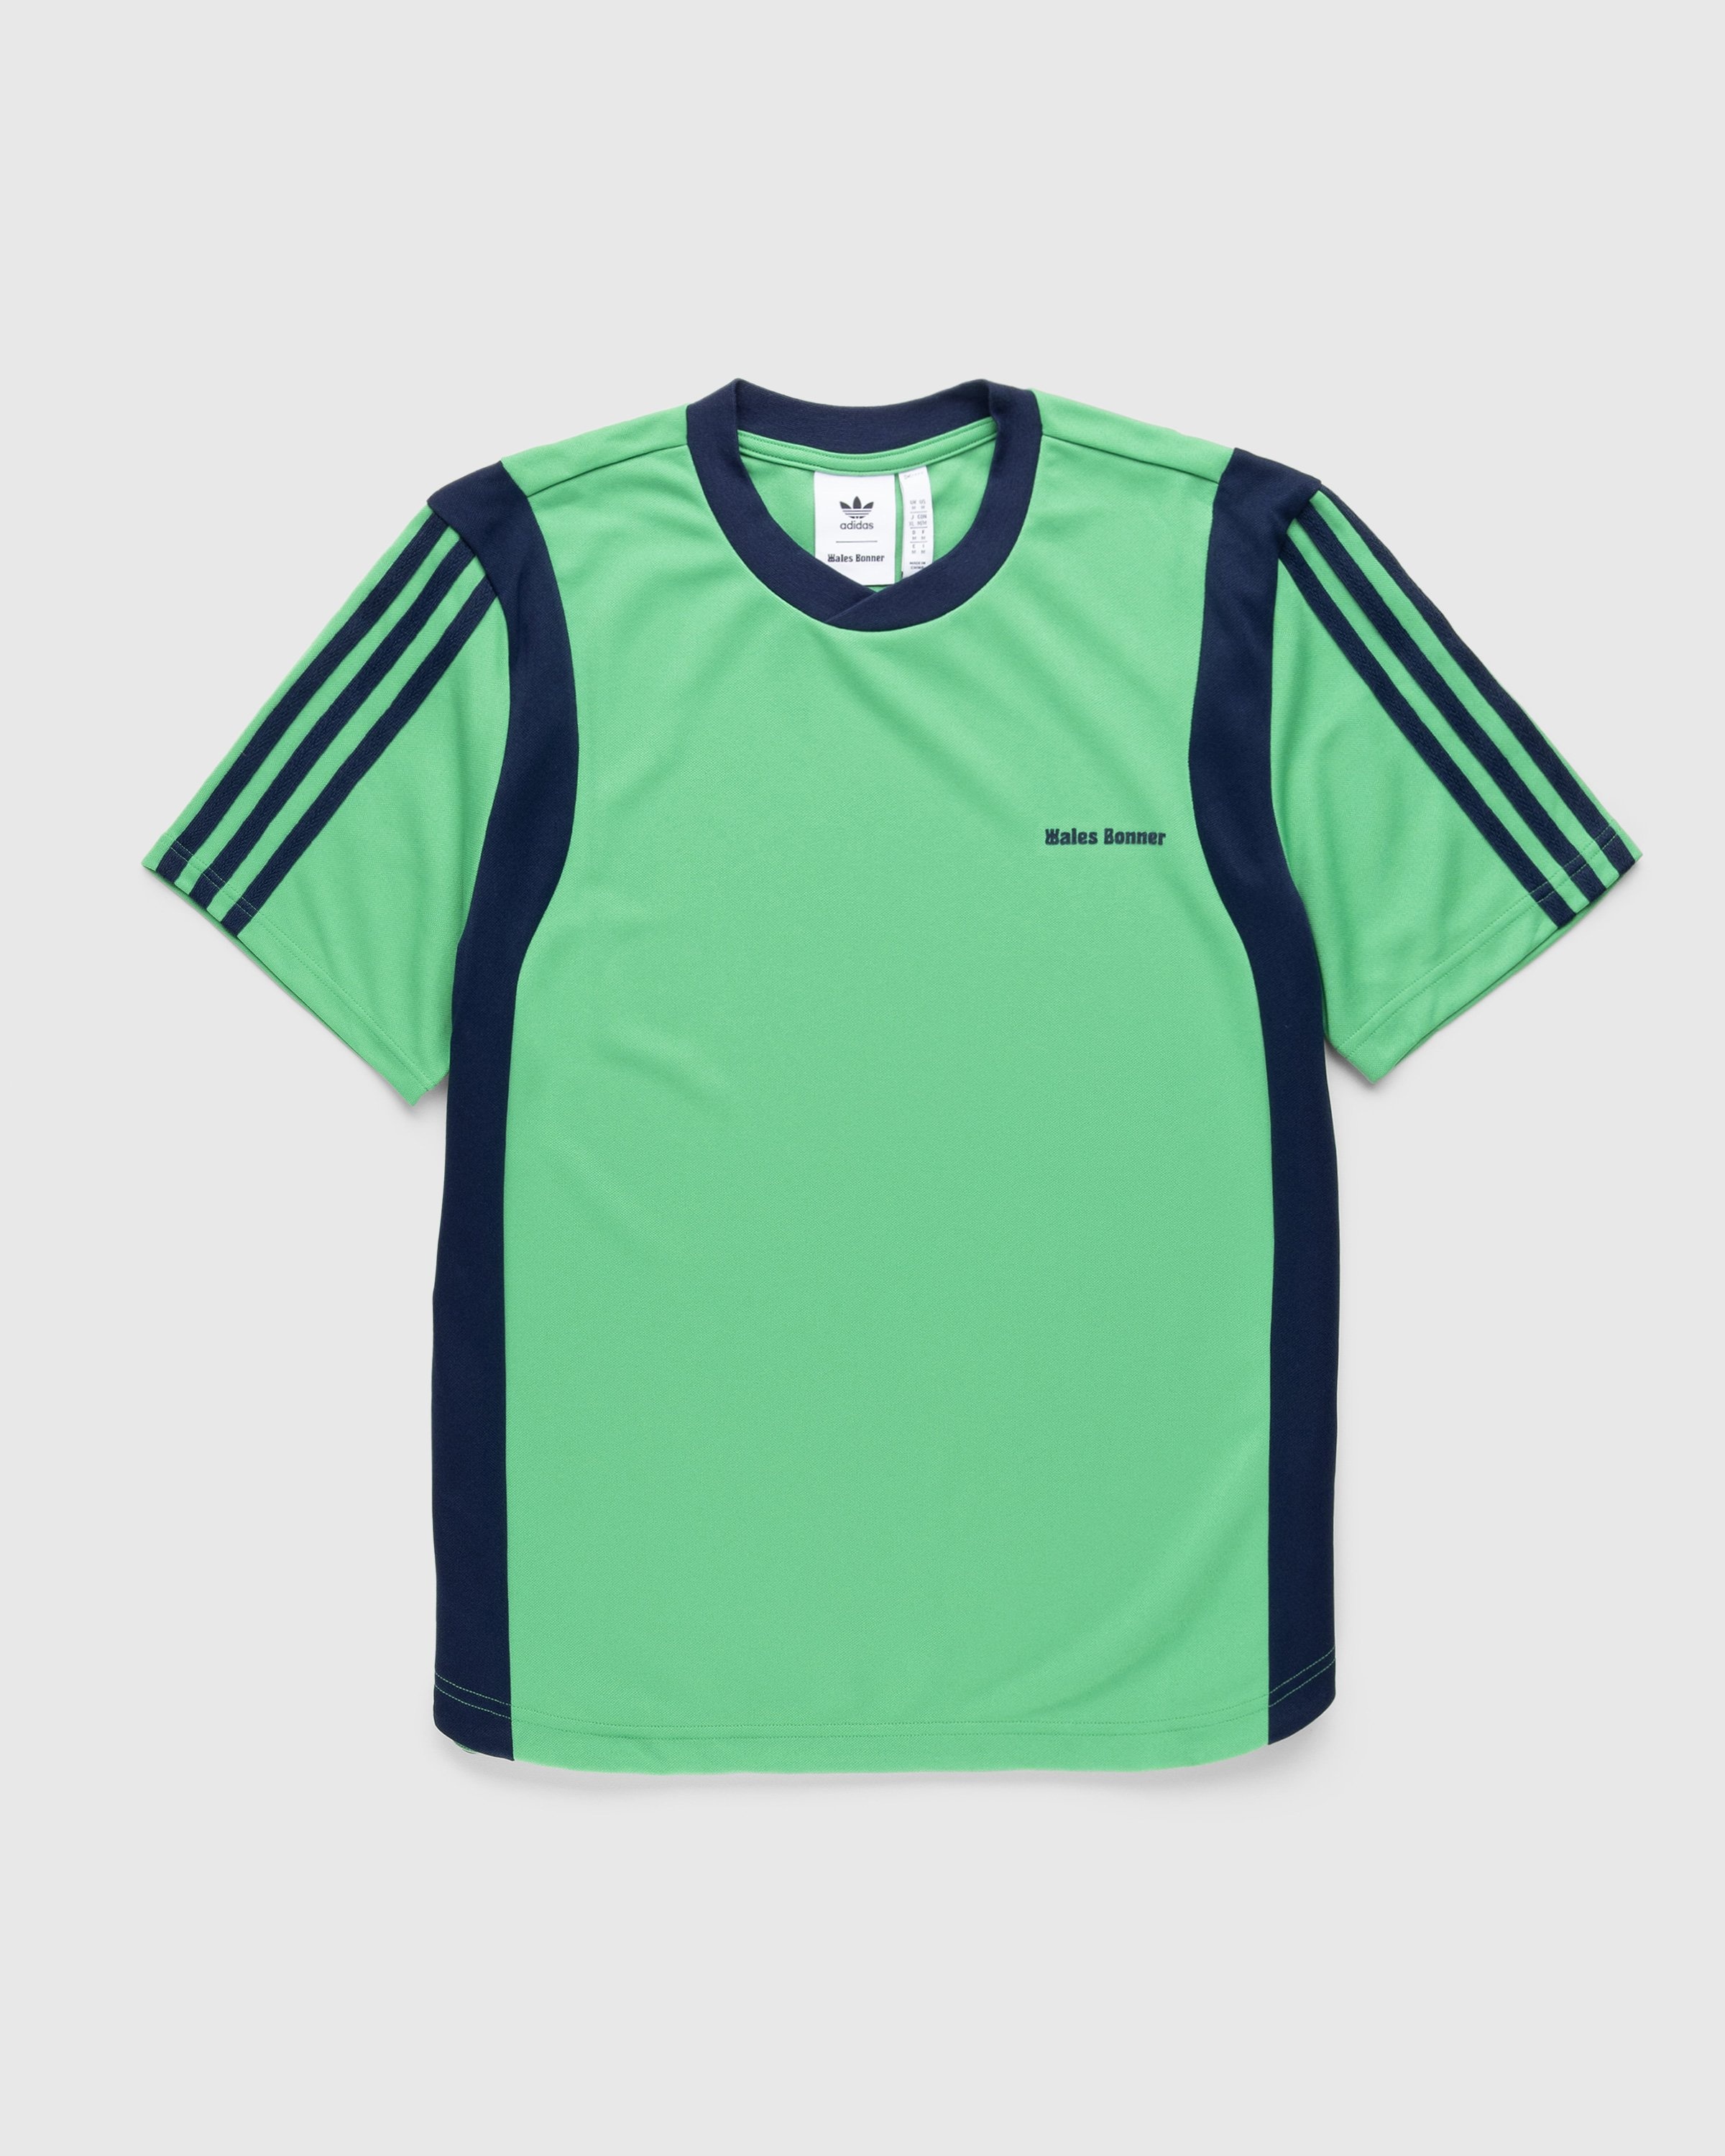 Adidas x Wales Bonner – Football Shirt Vivid Green - Longsleeves - Green - Image 1